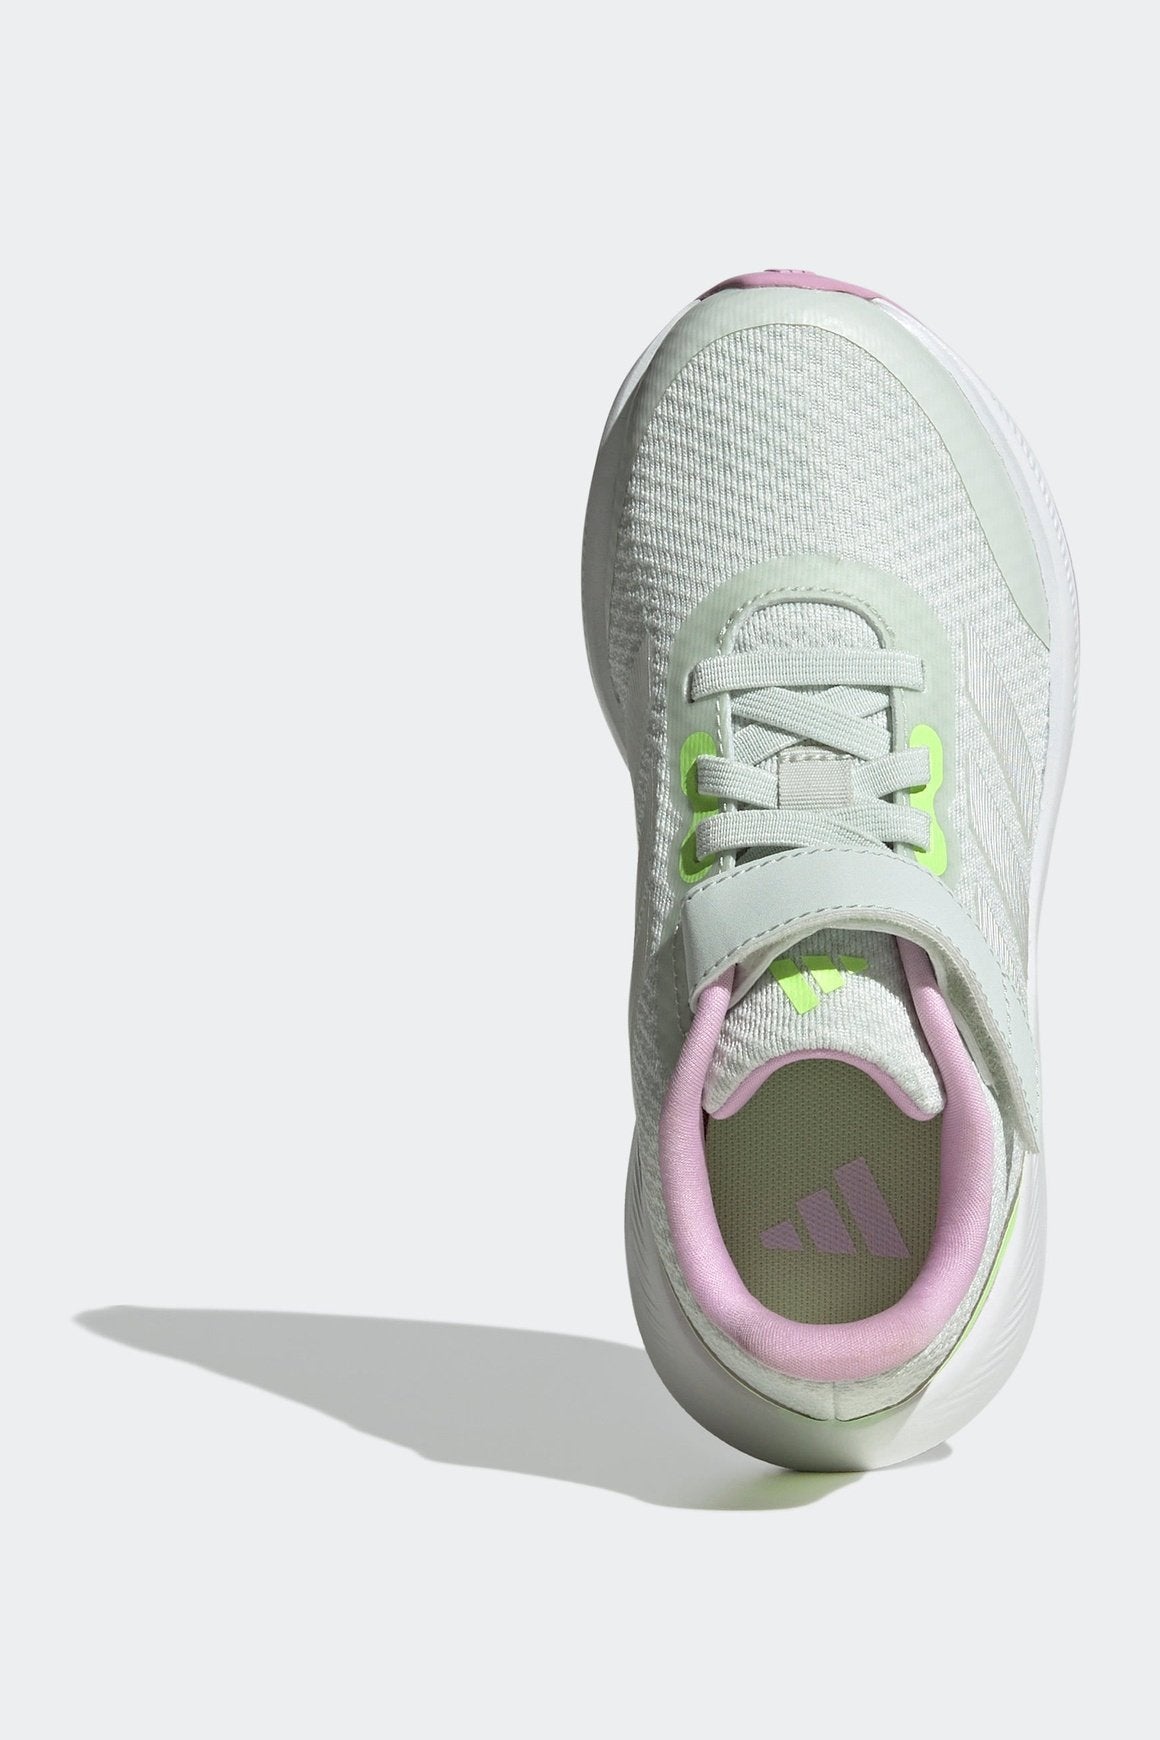 נעלי ספורט לילדים Runfalcon 3.0 בצבע אפור ורוד וצהוב זוהר